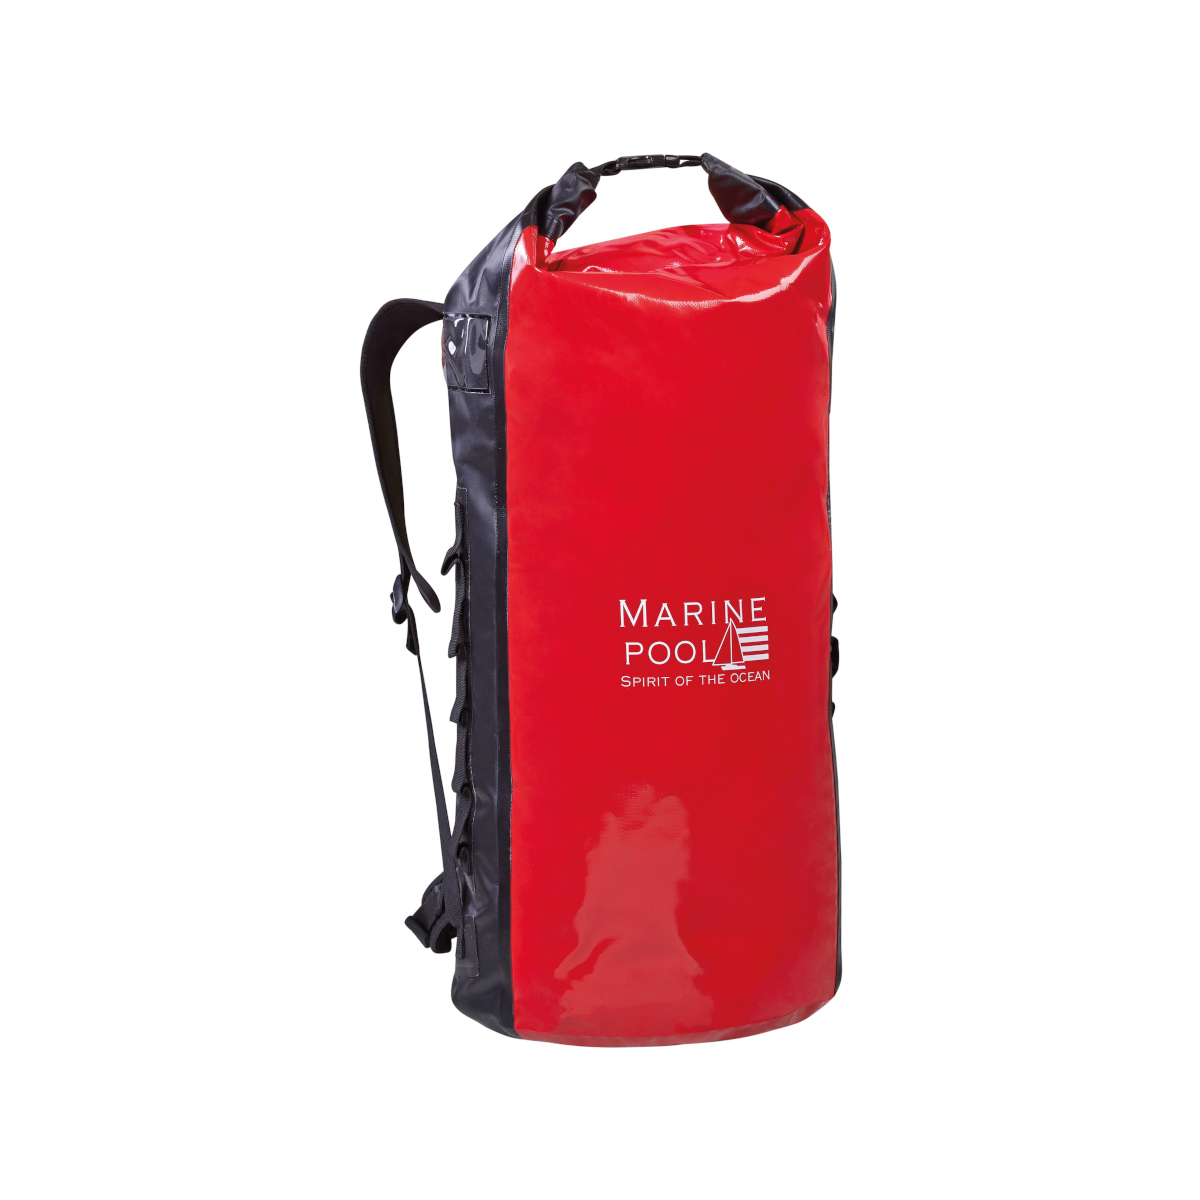 Marinepool Drybag 8 sac à dos étanche - rouge/noir, 62 L